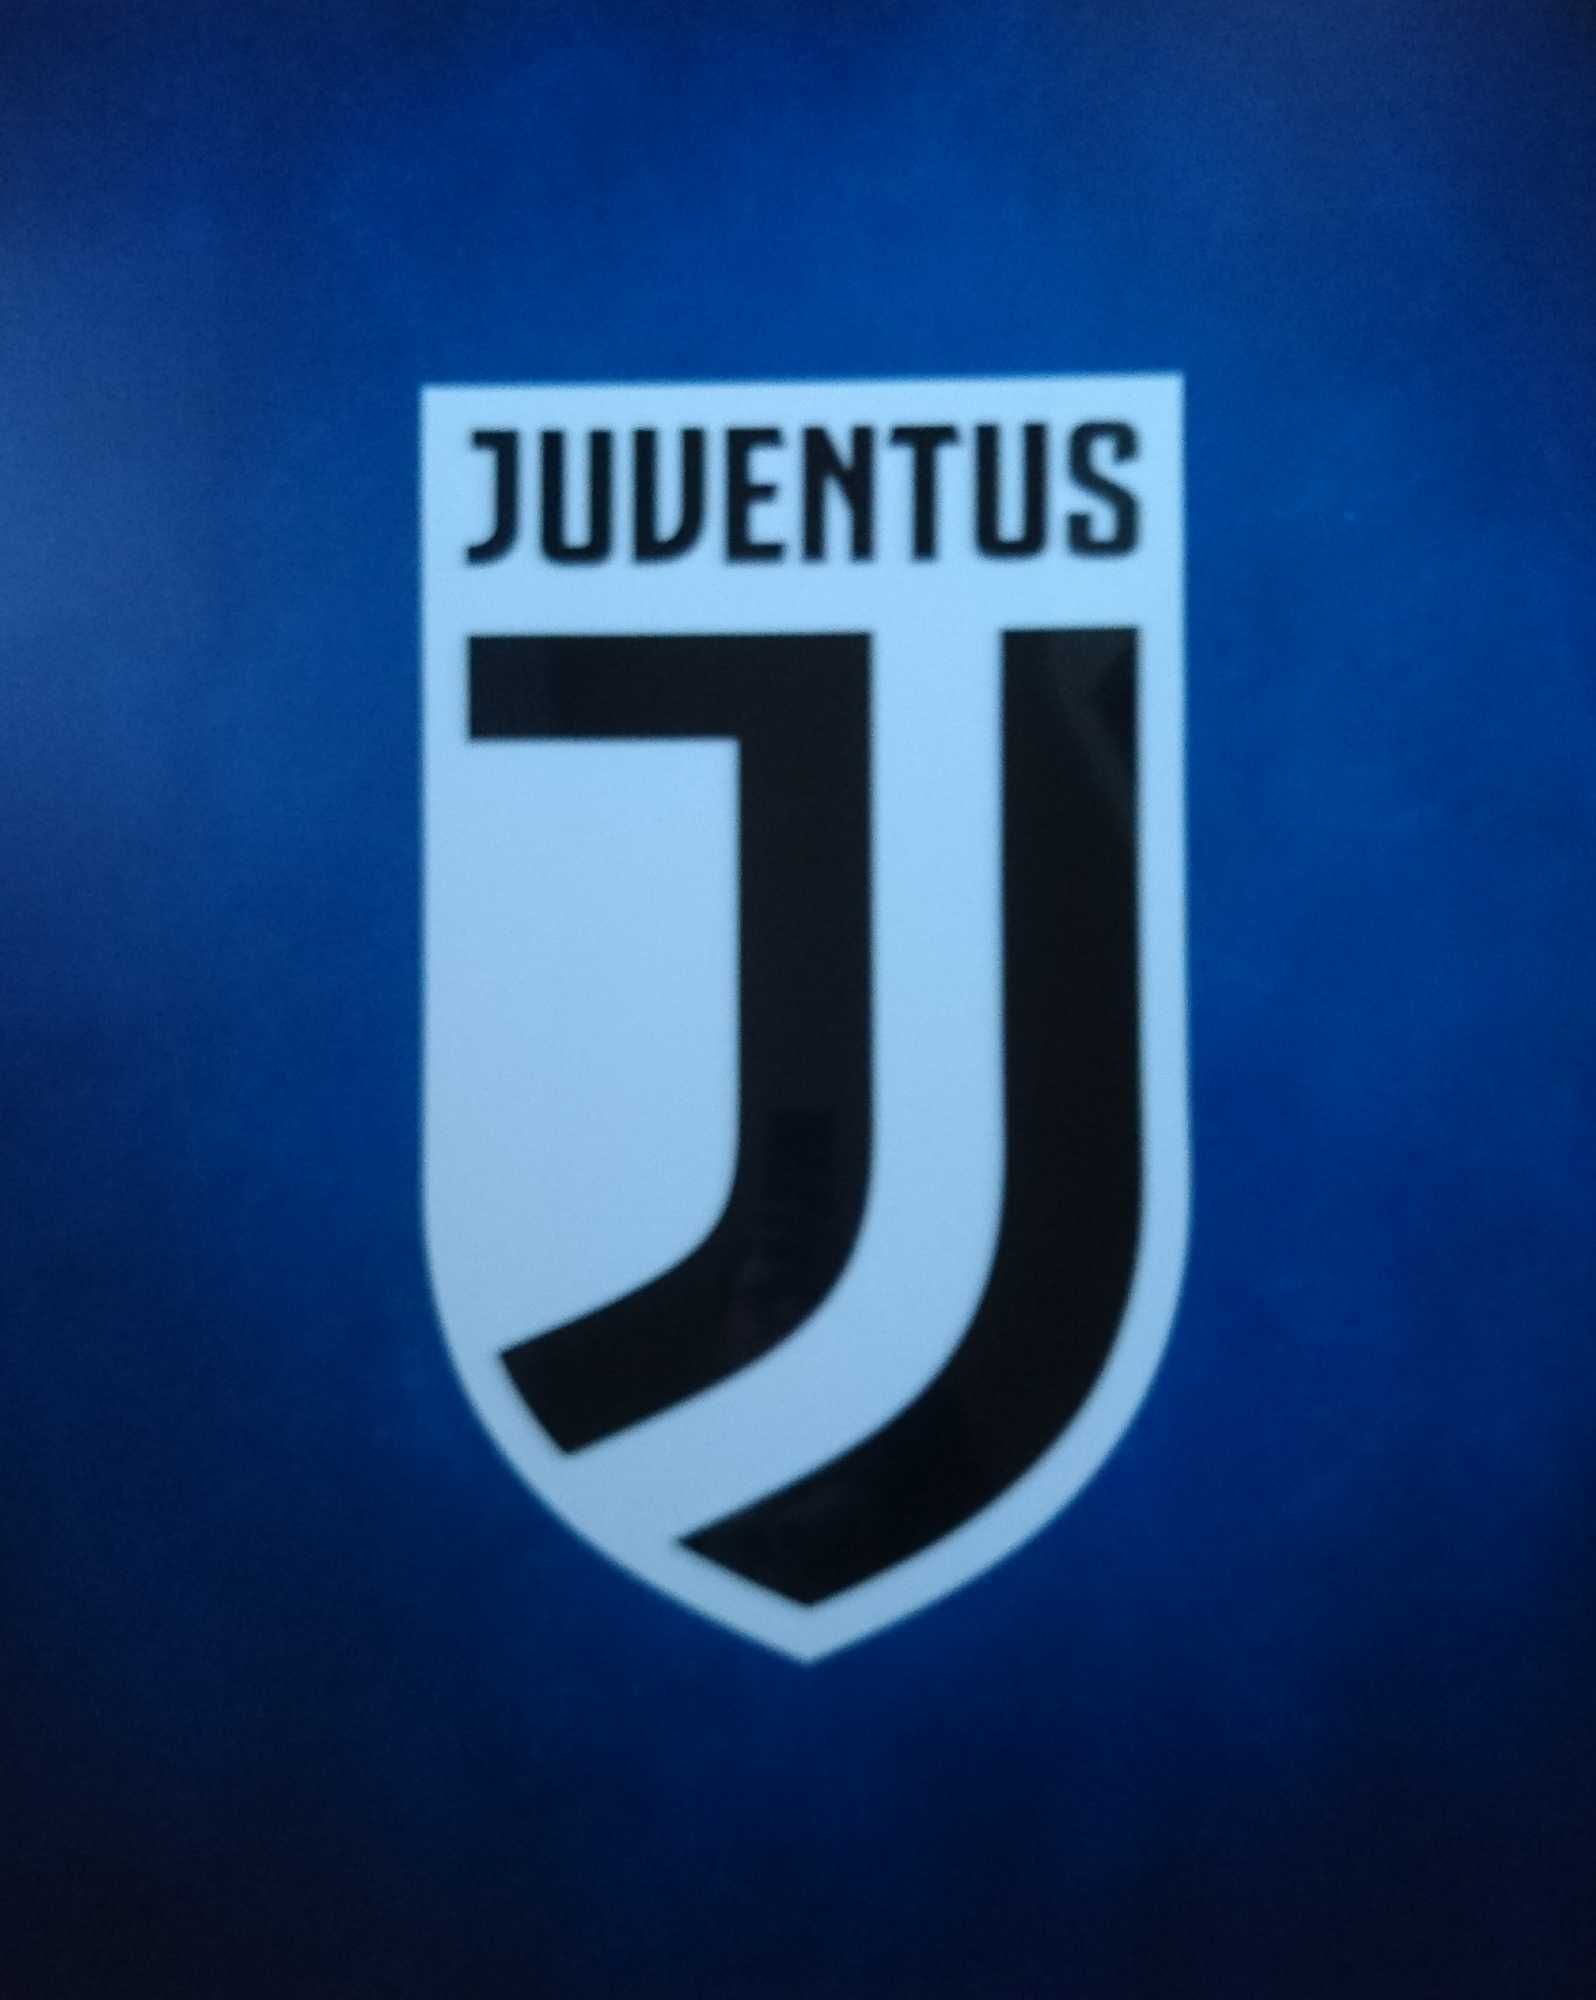 Herb klubowy Juventus Turyn do pokoju na ścianę gadżet prezent